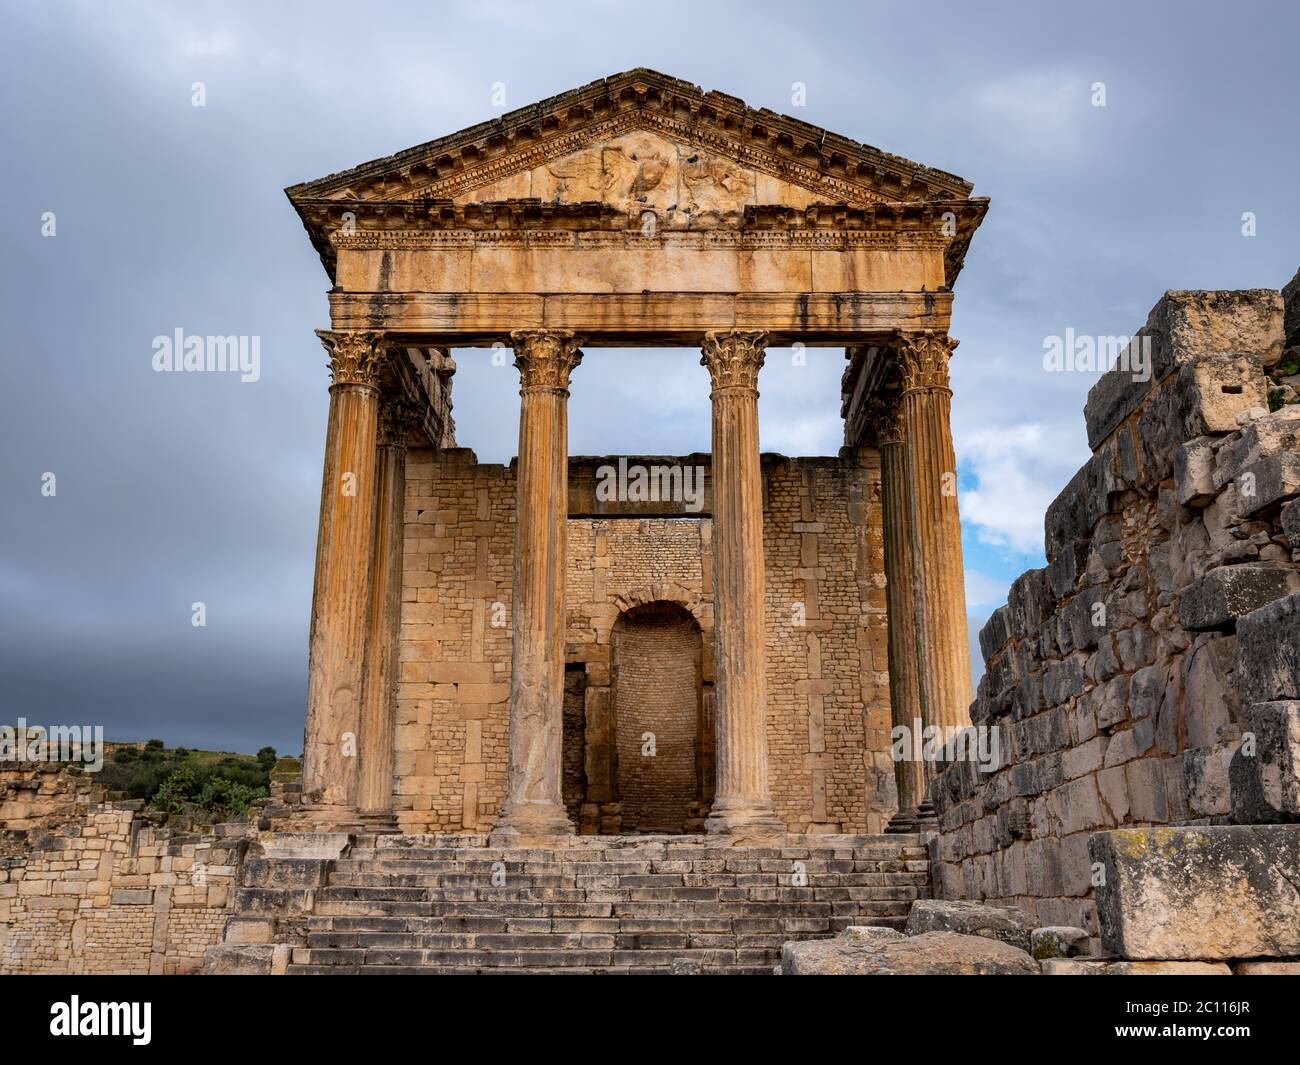 Le Temple de Jupiter ou le Capitole, le principal bâtiment debout de l'ancien site archéologique romain de Dougga (Thugga), Tunisie Banque D'Images